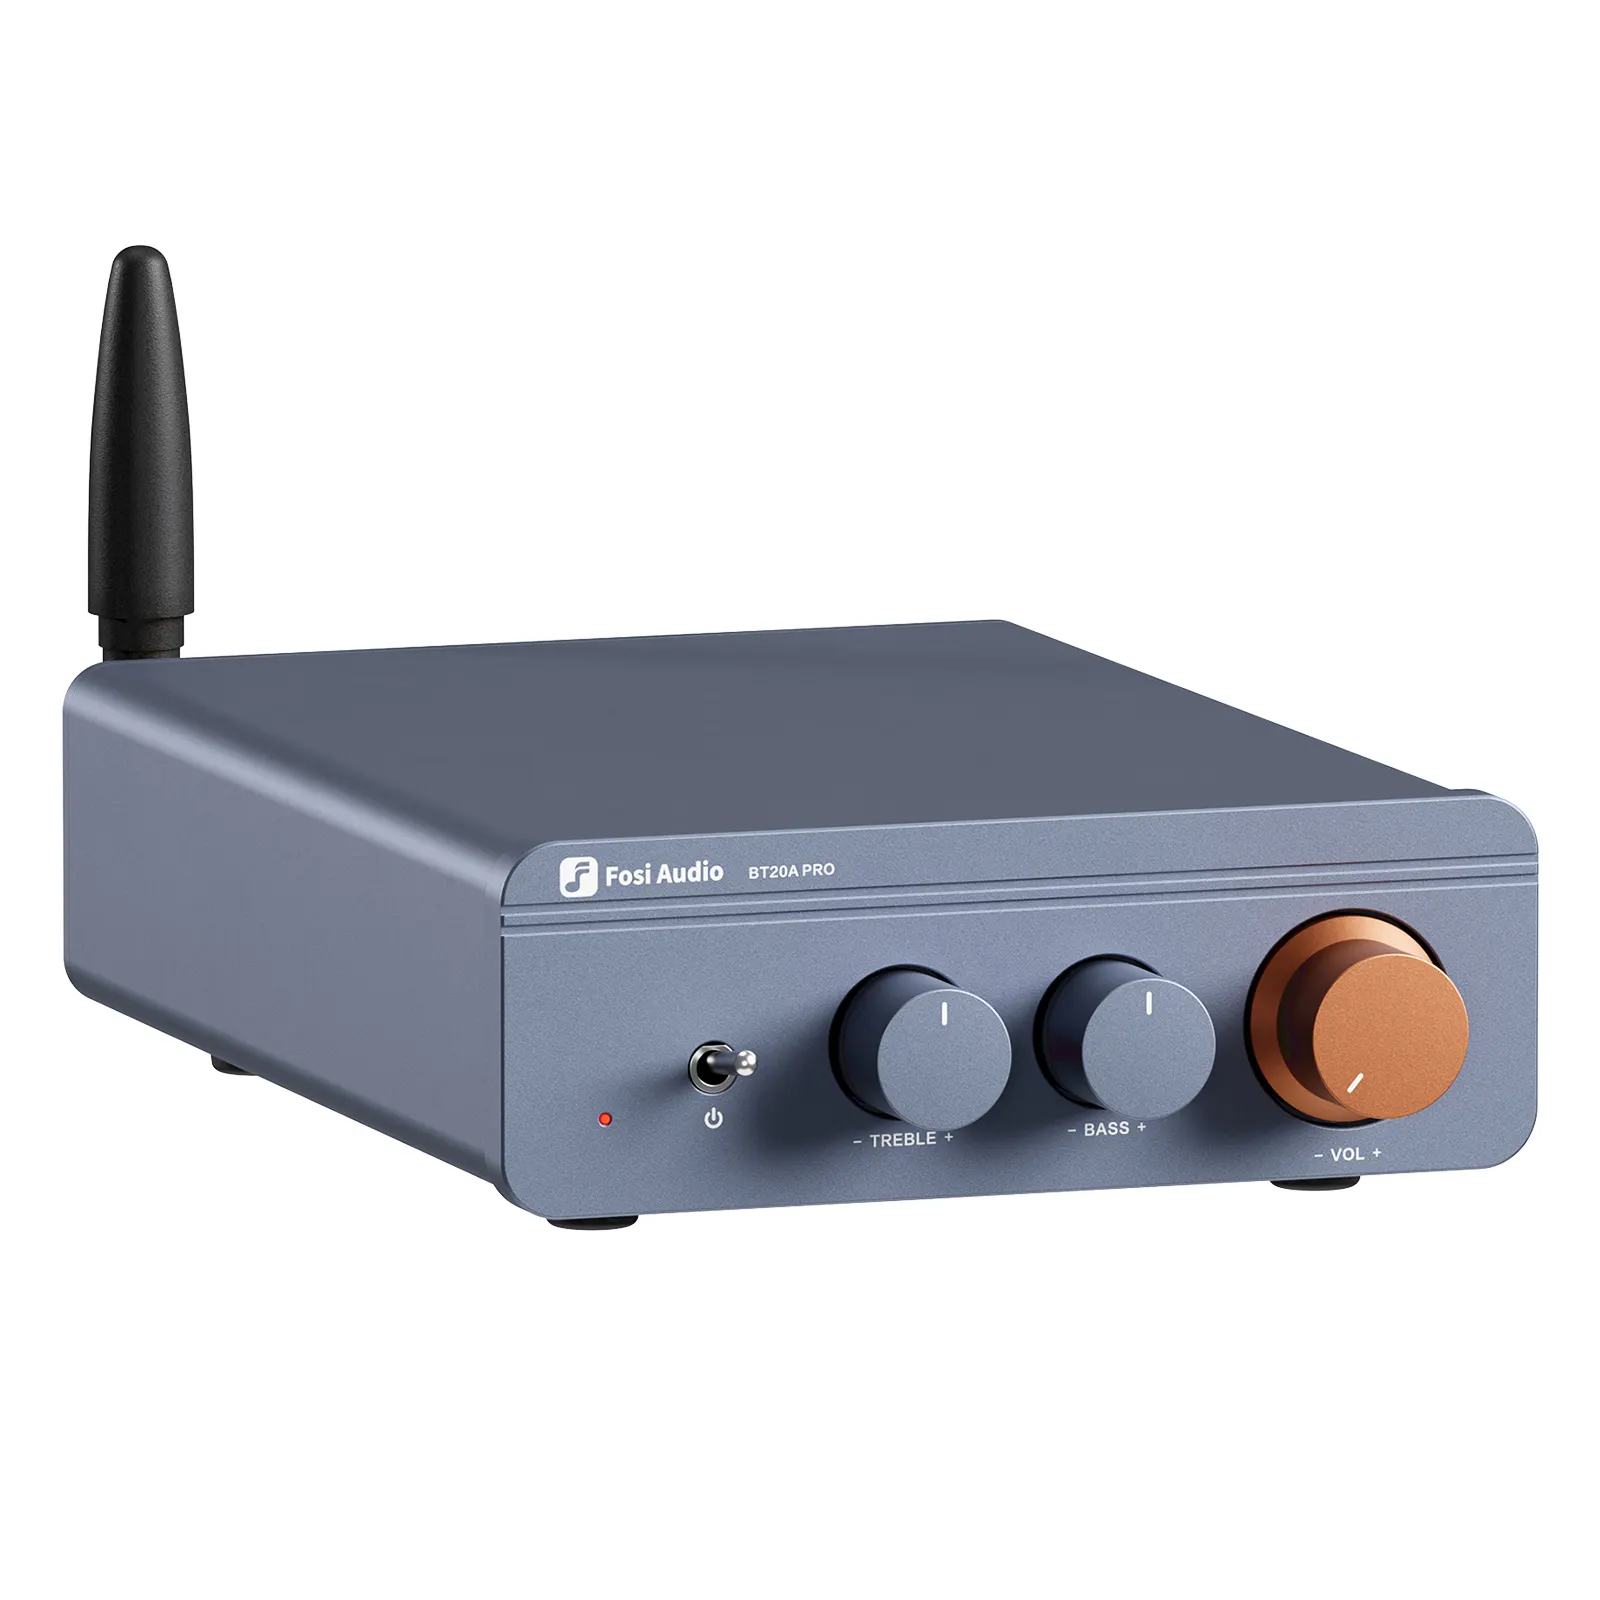 Fosi Audio BT20A Pro TPA3255 amplificateur de puissance de son bleu 300W X2 Mini HiFi stéréo classe D amplificateur de basses aigus pour Home cinéma CB